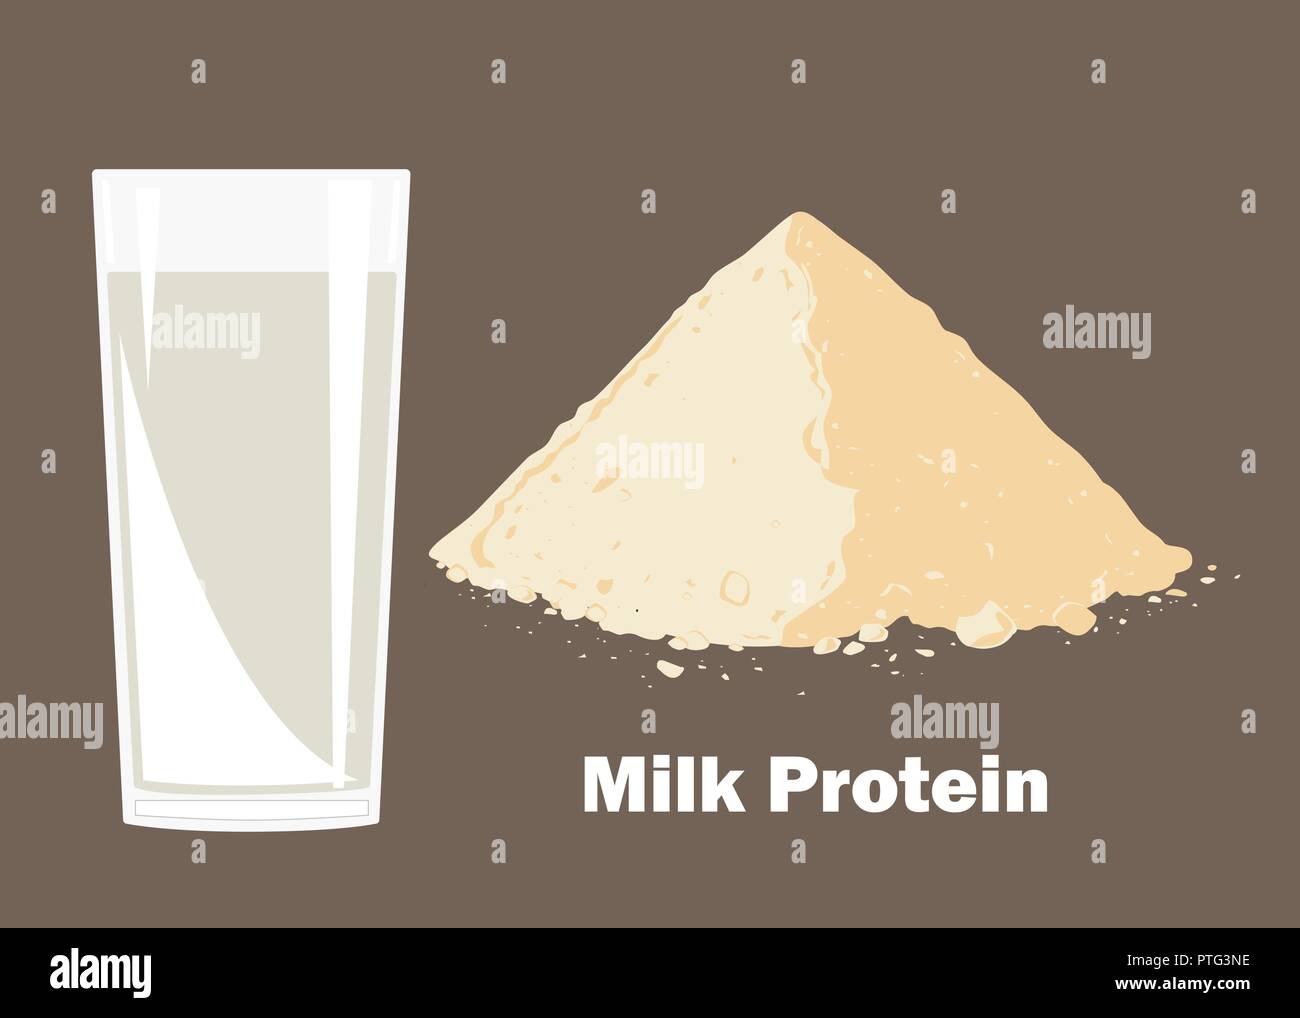 Whey Protein Pulver und ein Glas Milch. Vector Illustration. Bodybuilding Supplement Konzept. Stock Vektor